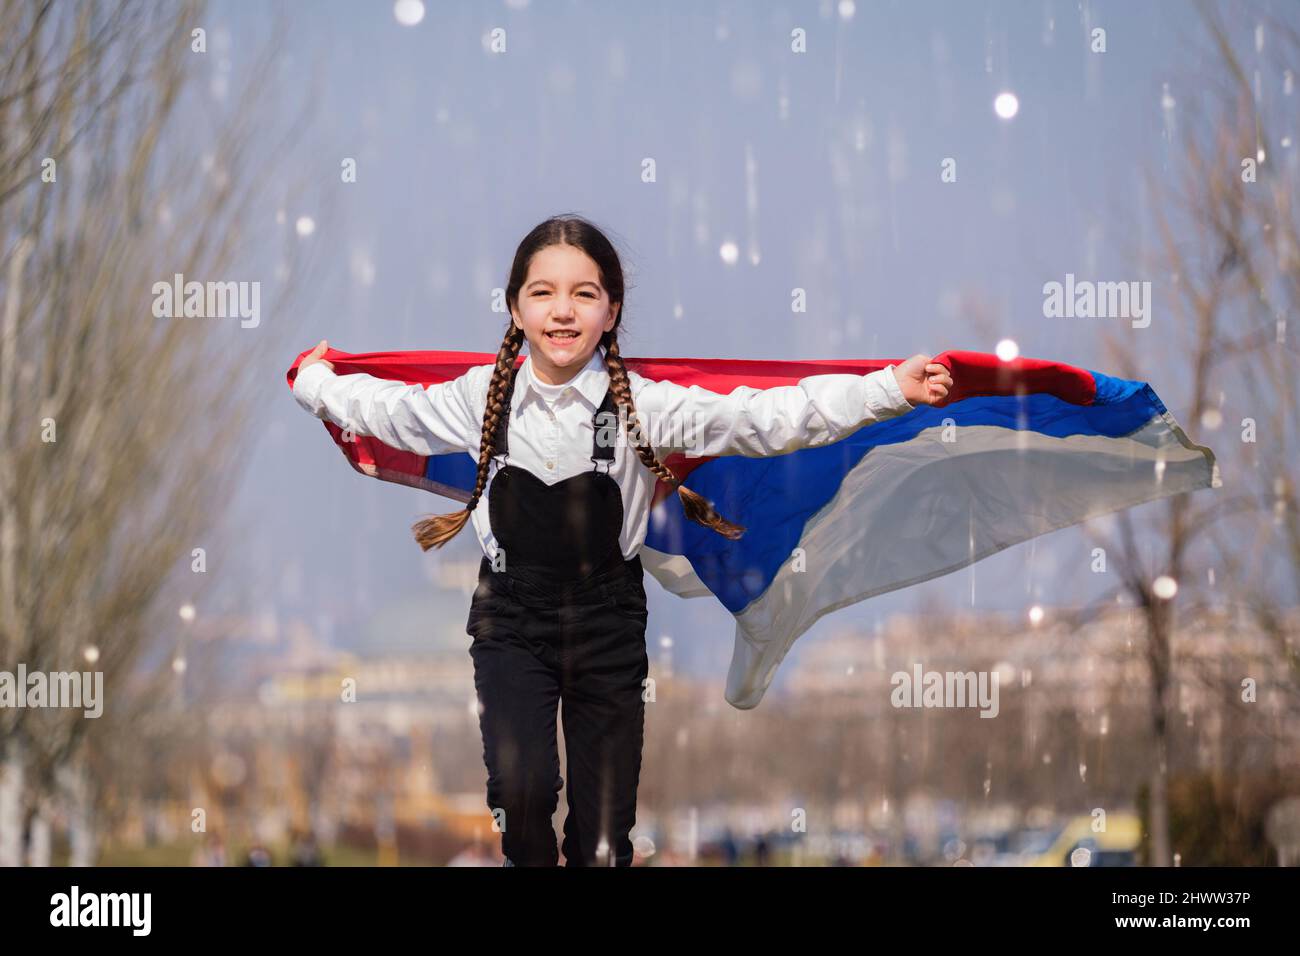 Bonne fille ukrainienne qui court dans le parc et qui agite le drapeau national jaune et bleu. Concept d'amour pour l'Ukraine. Indépendance, drapeau, jour de la Constitution Banque D'Images